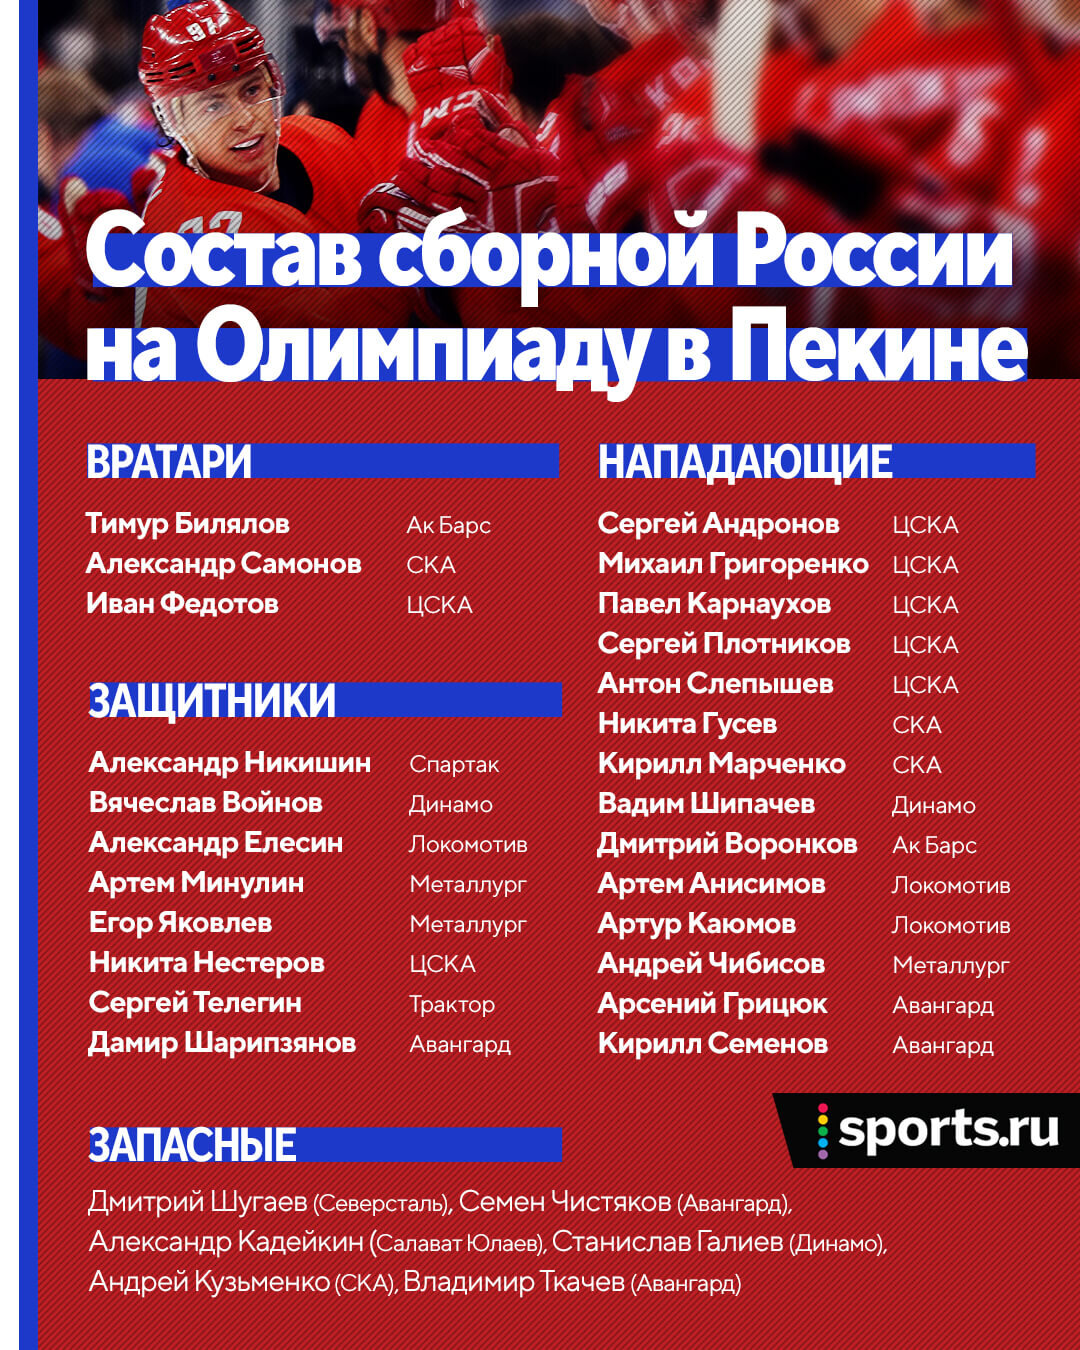 Стал известен расширенный состав женской сборной России по хоккею на Олимпиаду  - ТАСС